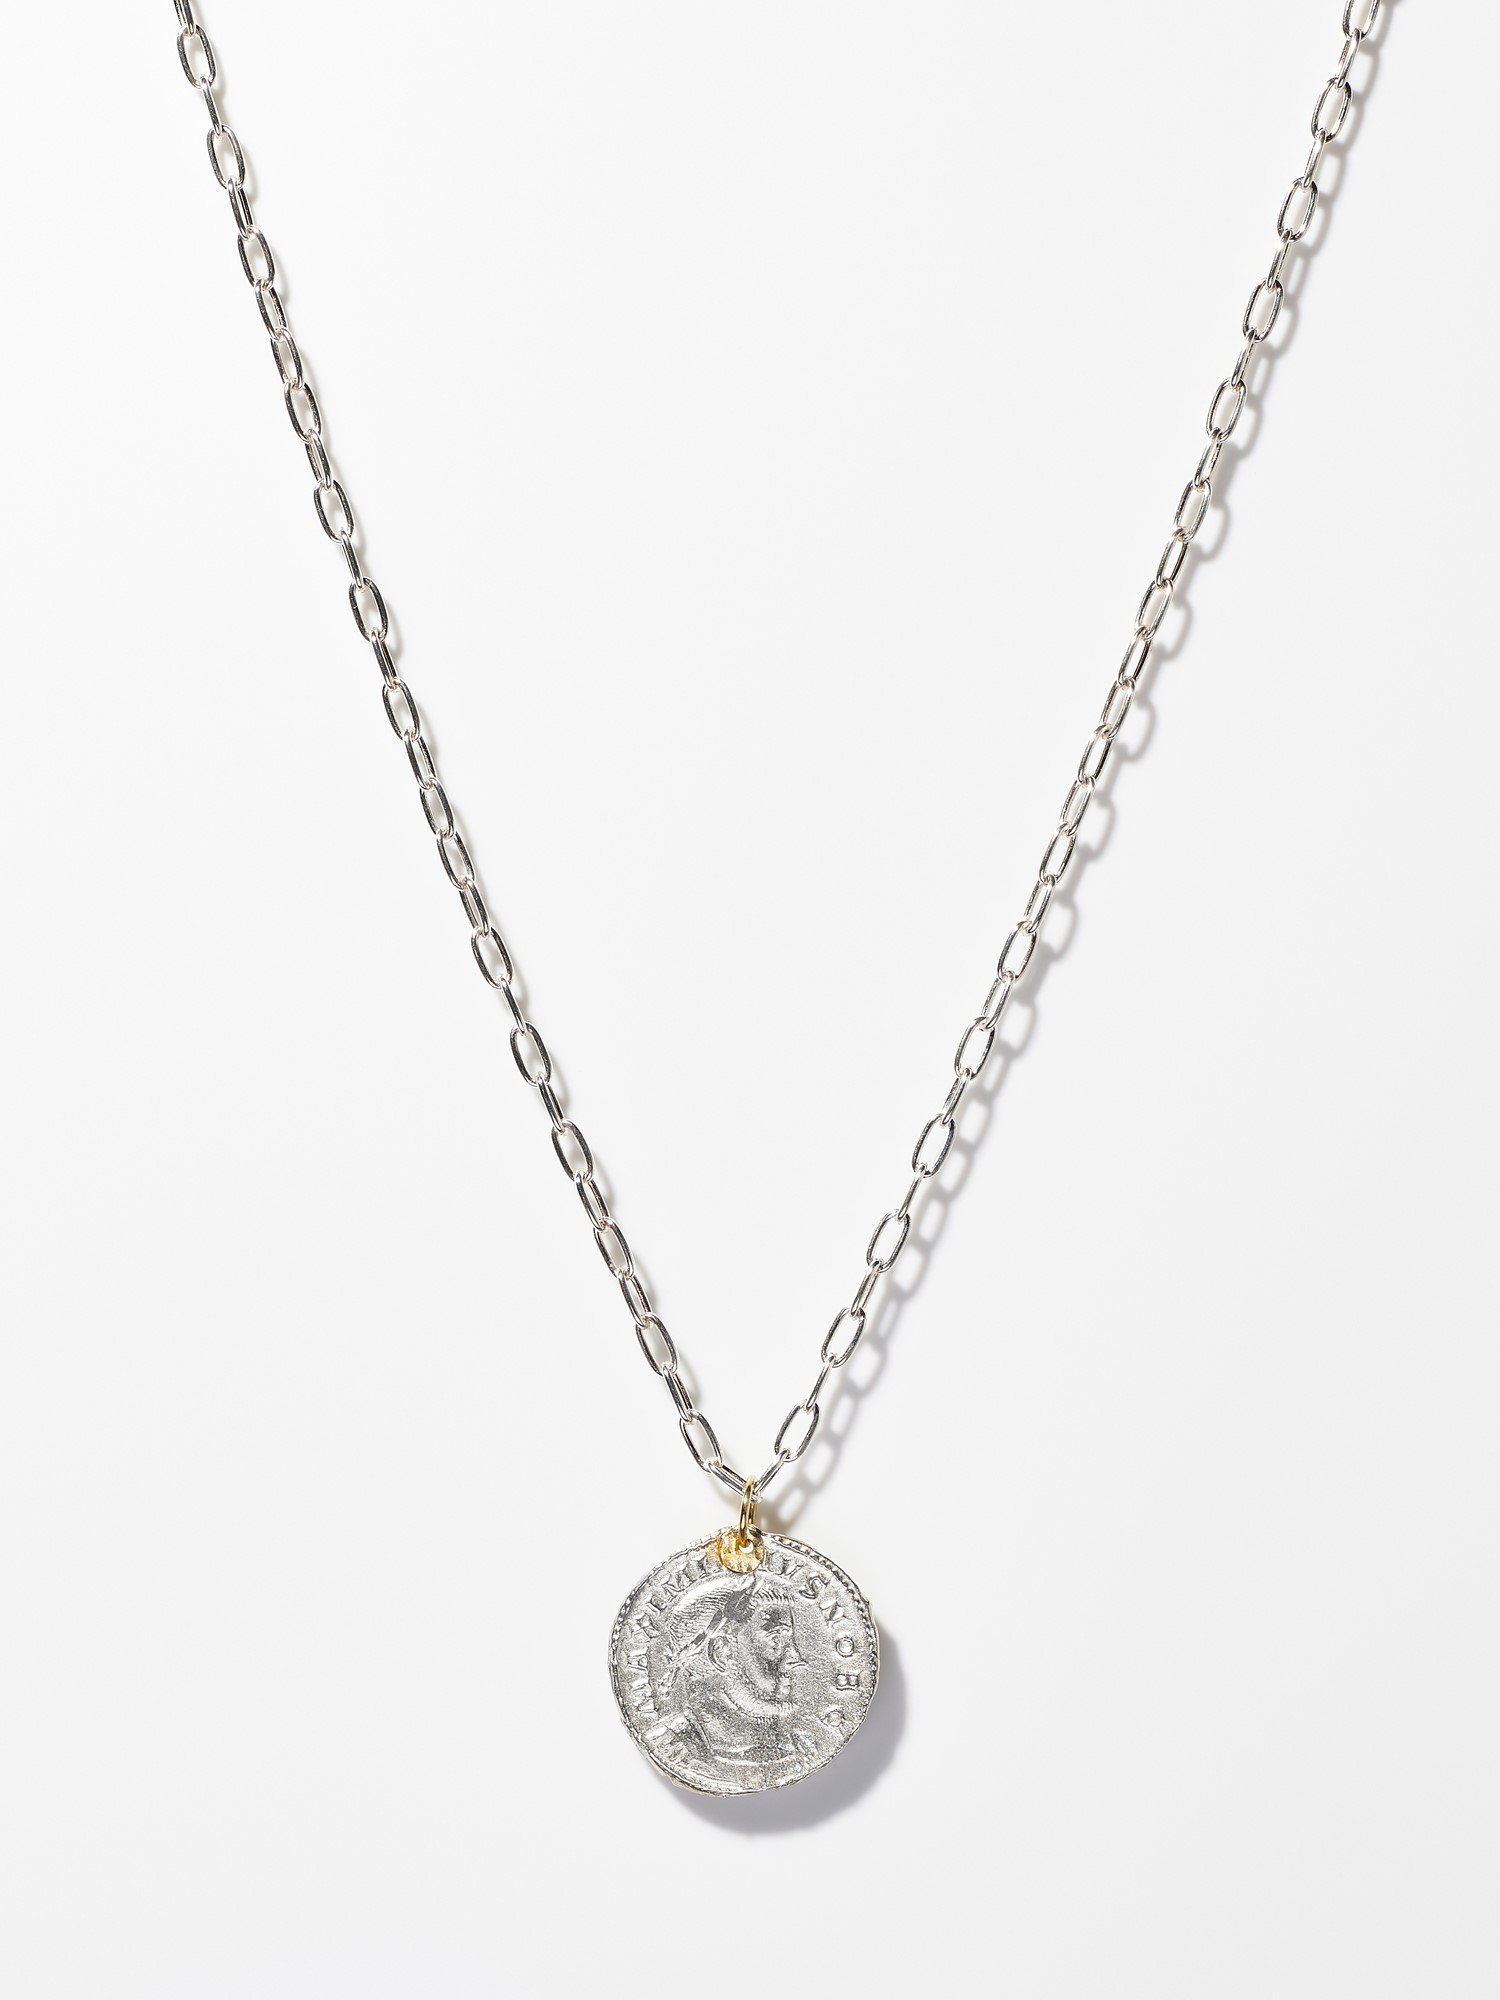 ARTEMIS / Roman coin necklace / FOLLIS - GIGI Jewelry